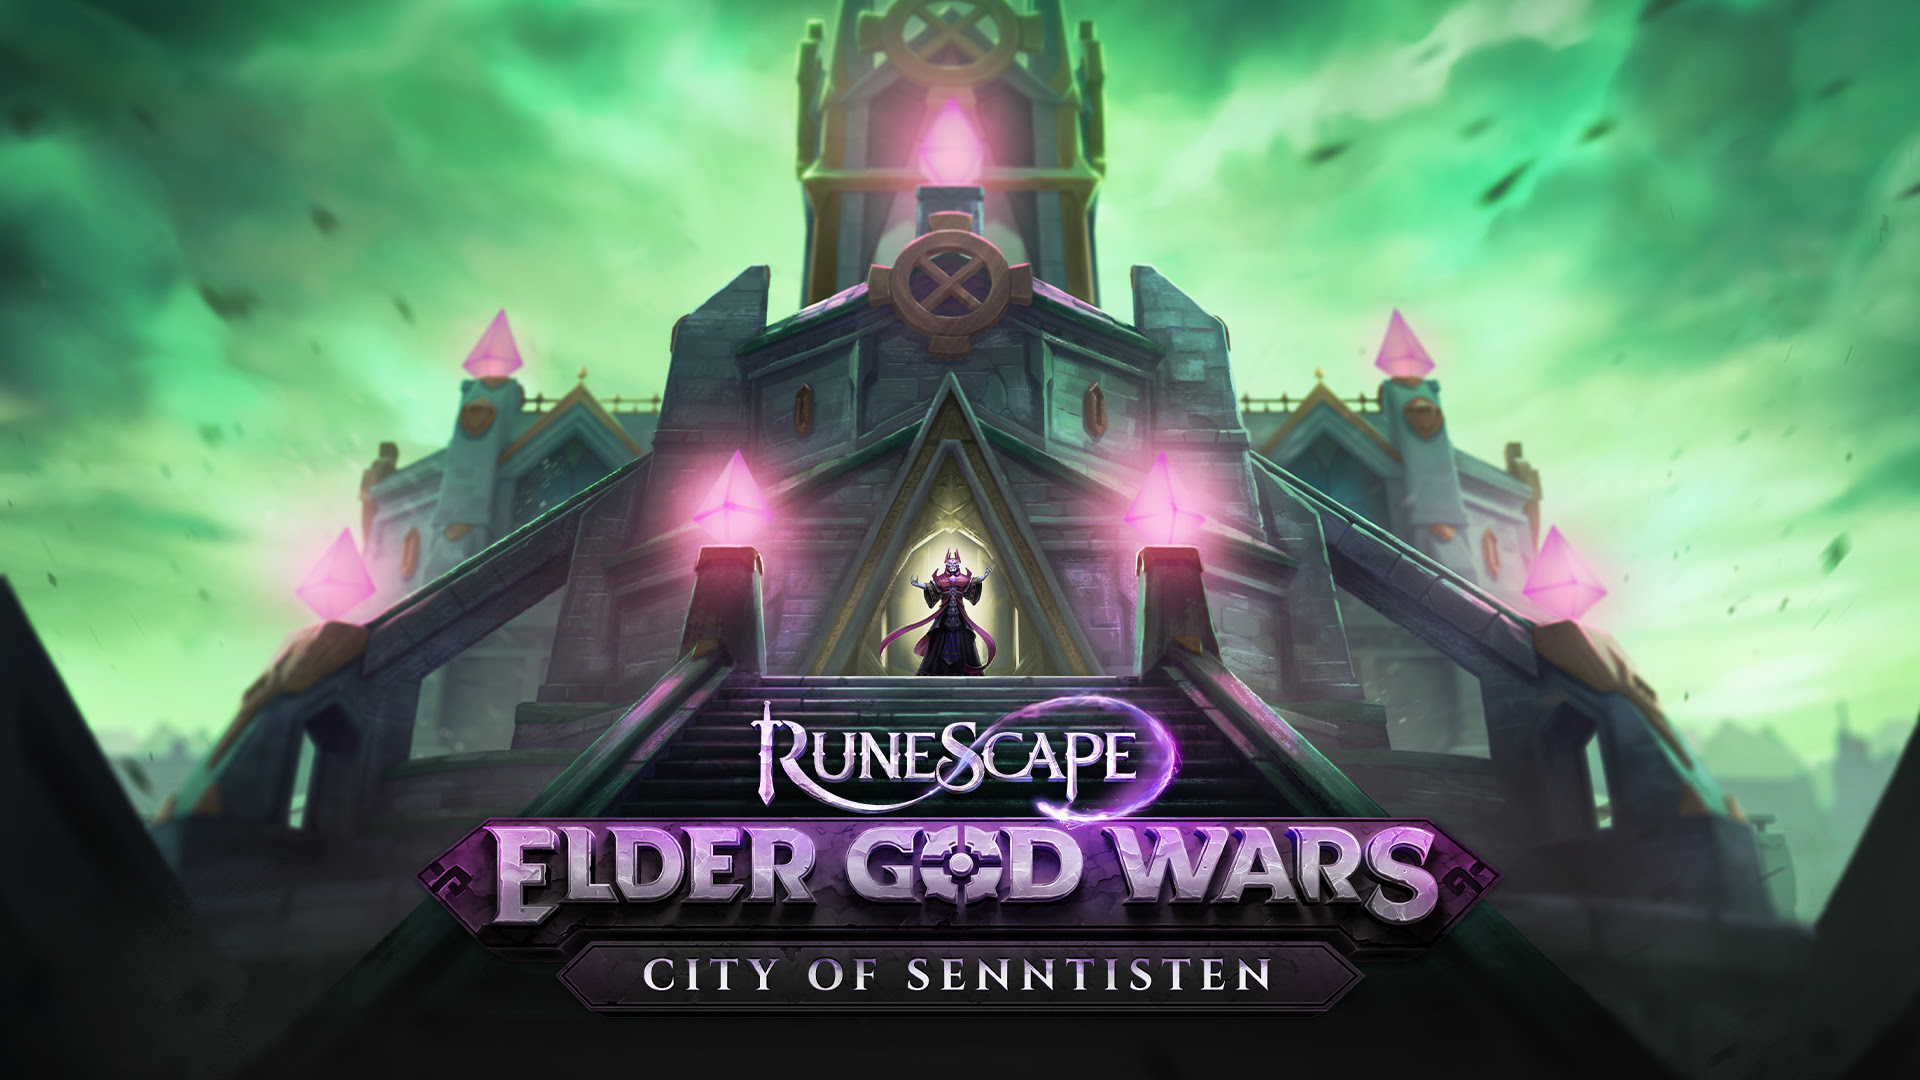 Runescape Elder God Wars City of Senntisten is now live